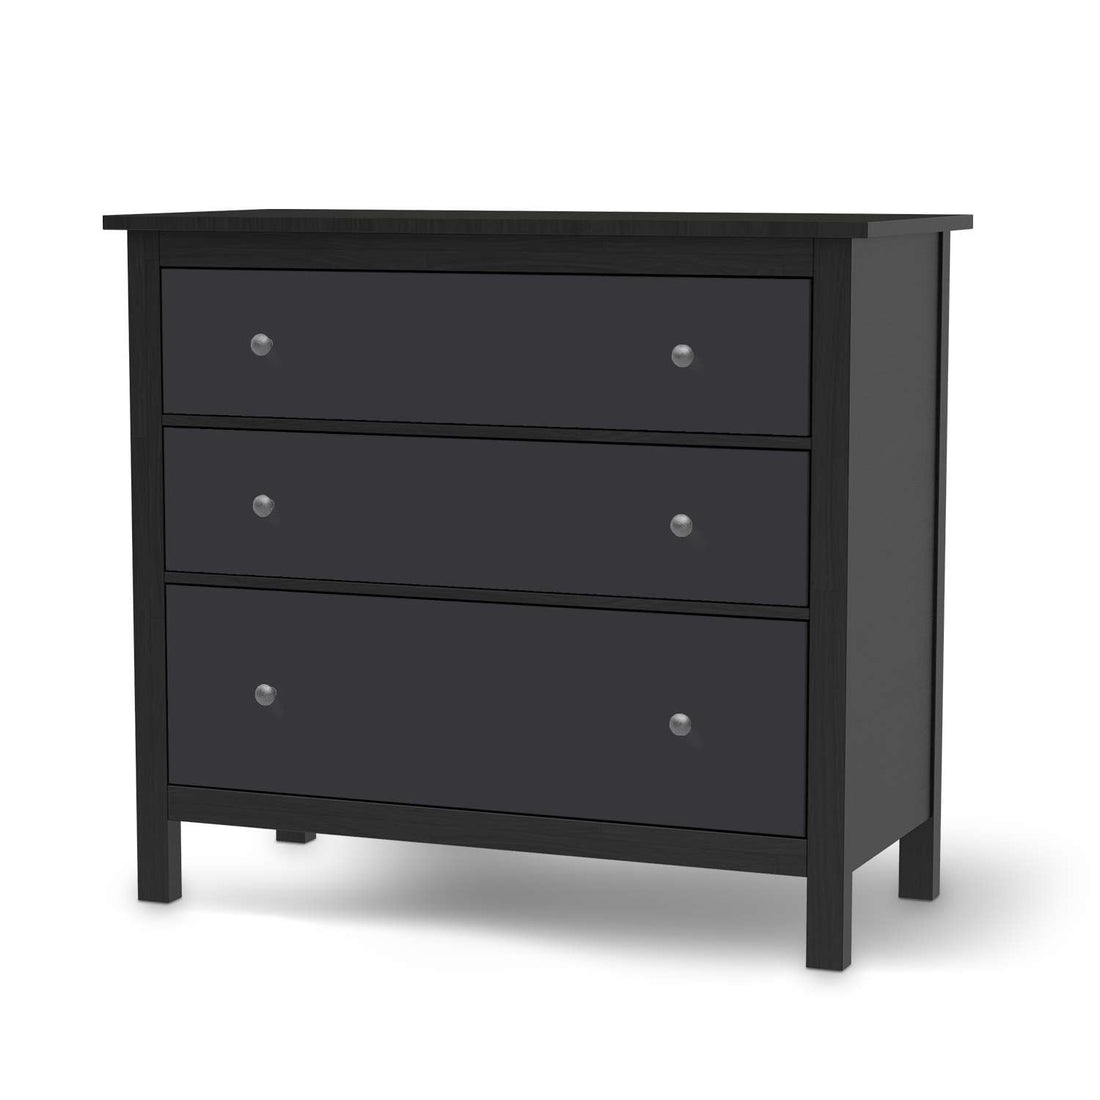 Möbelfolie Grau Dark - IKEA Hemnes Kommode 3 Schubladen - schwarz